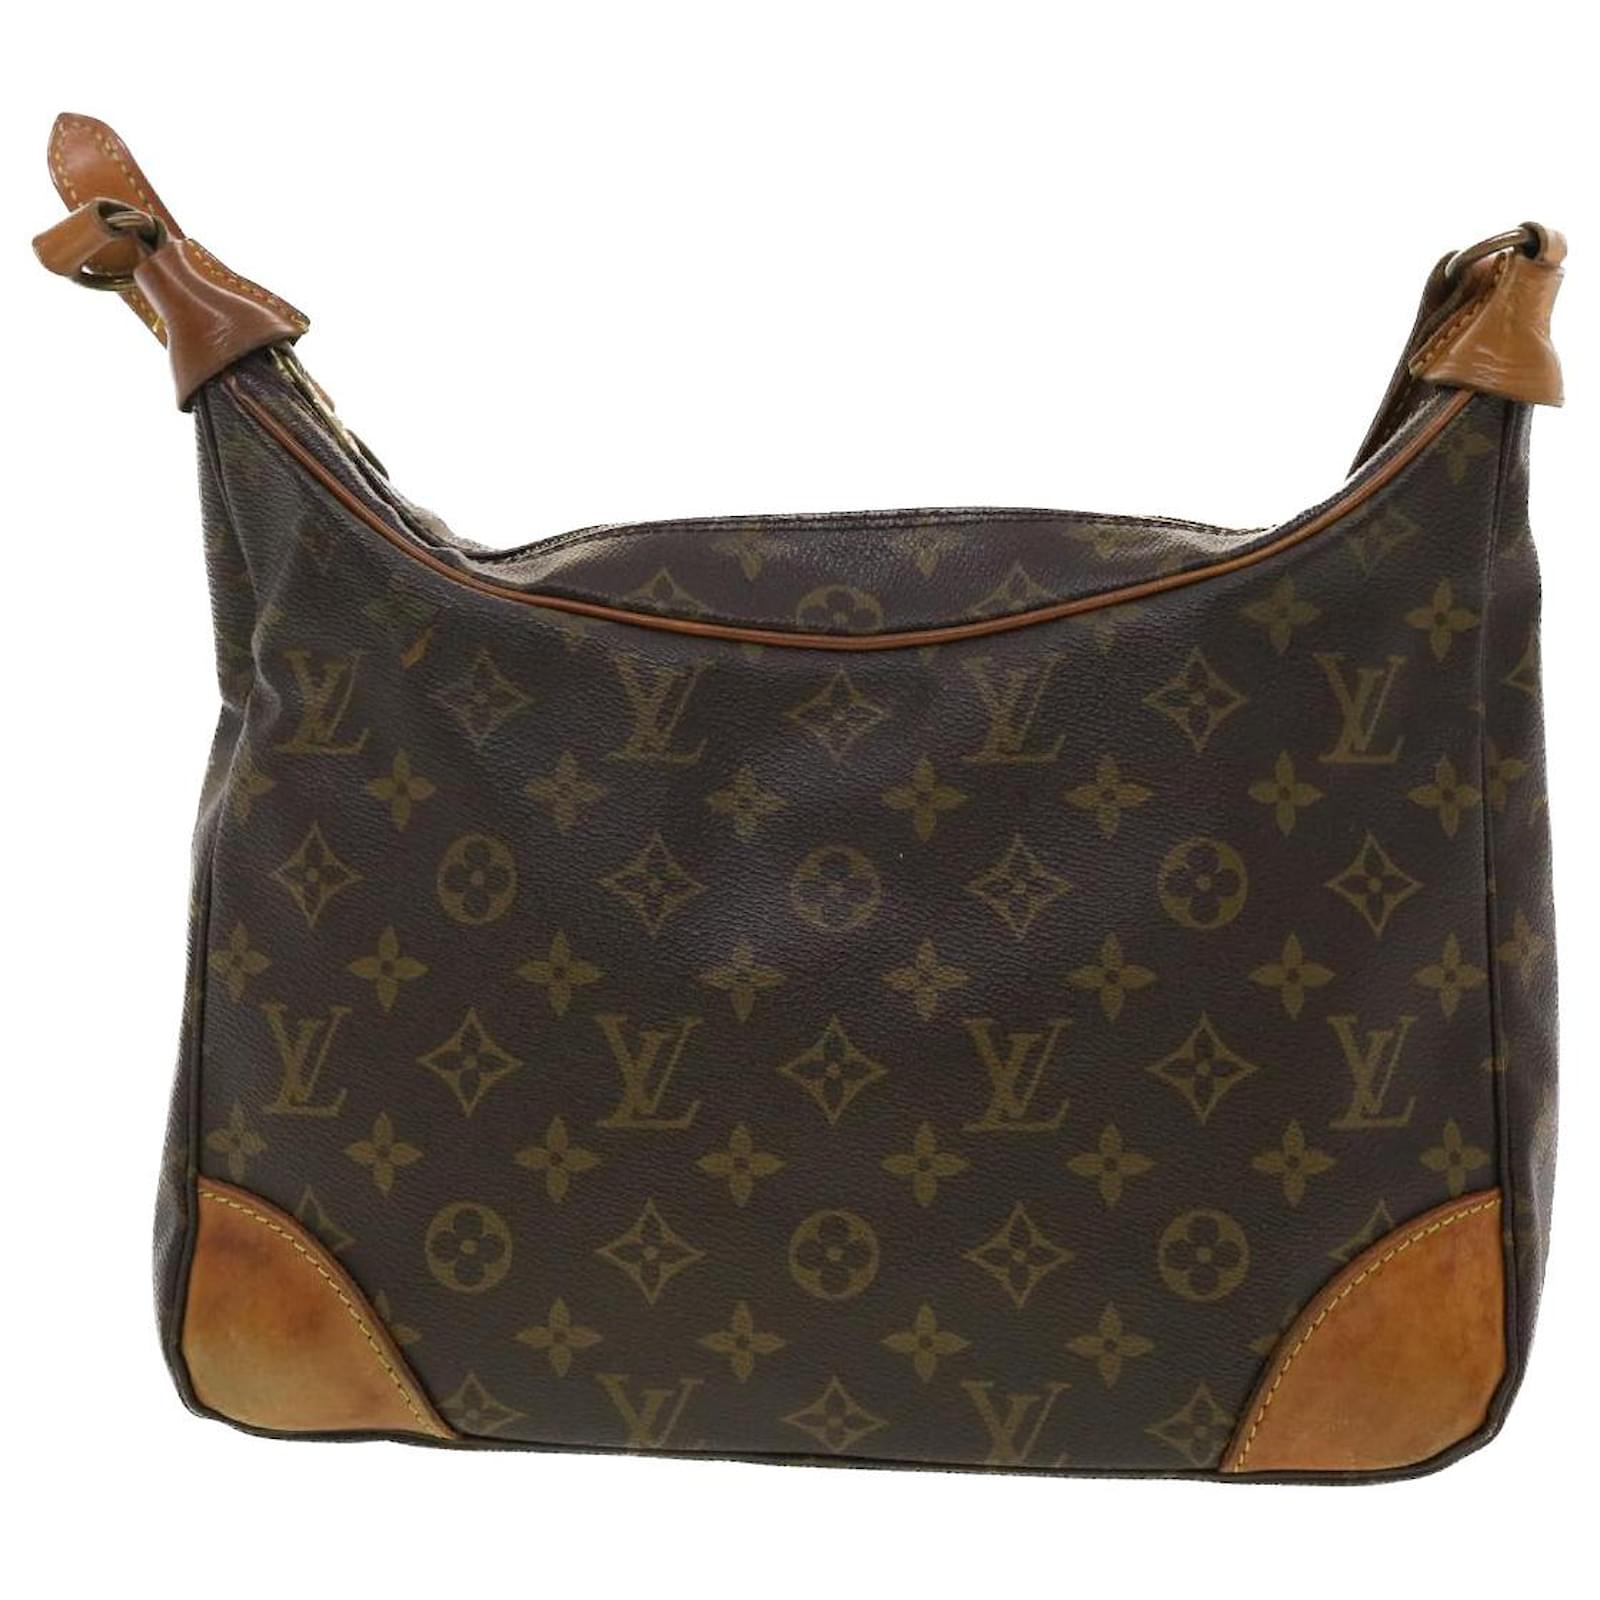 Louis Vuitton Boulogne Pm M51265 Monogram As0092 Shoulder Bag